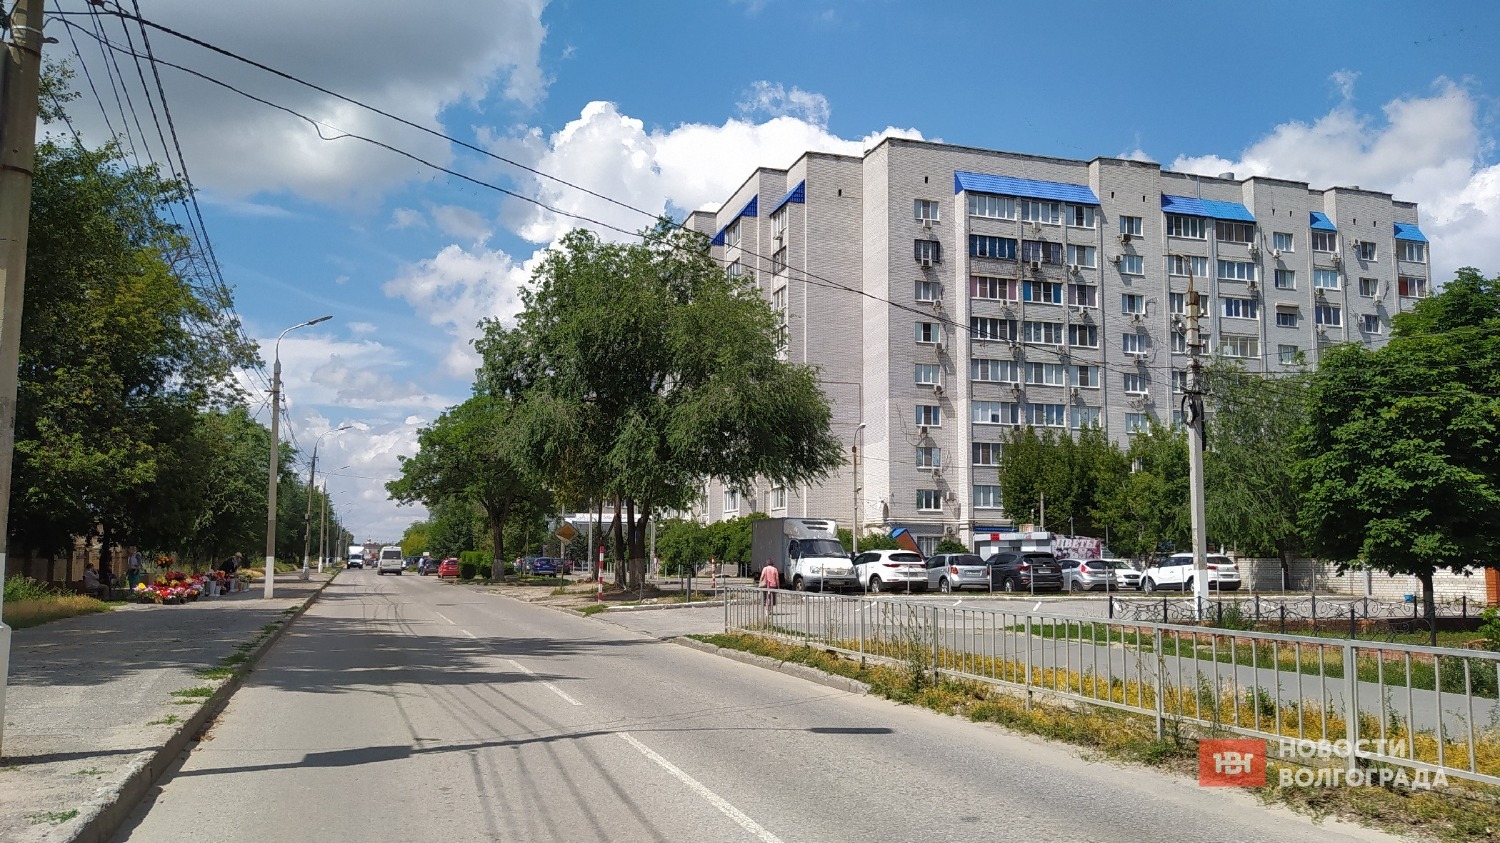 Дзержинский район Волгограда считается хорошим «спальником» с большими перспективами развития